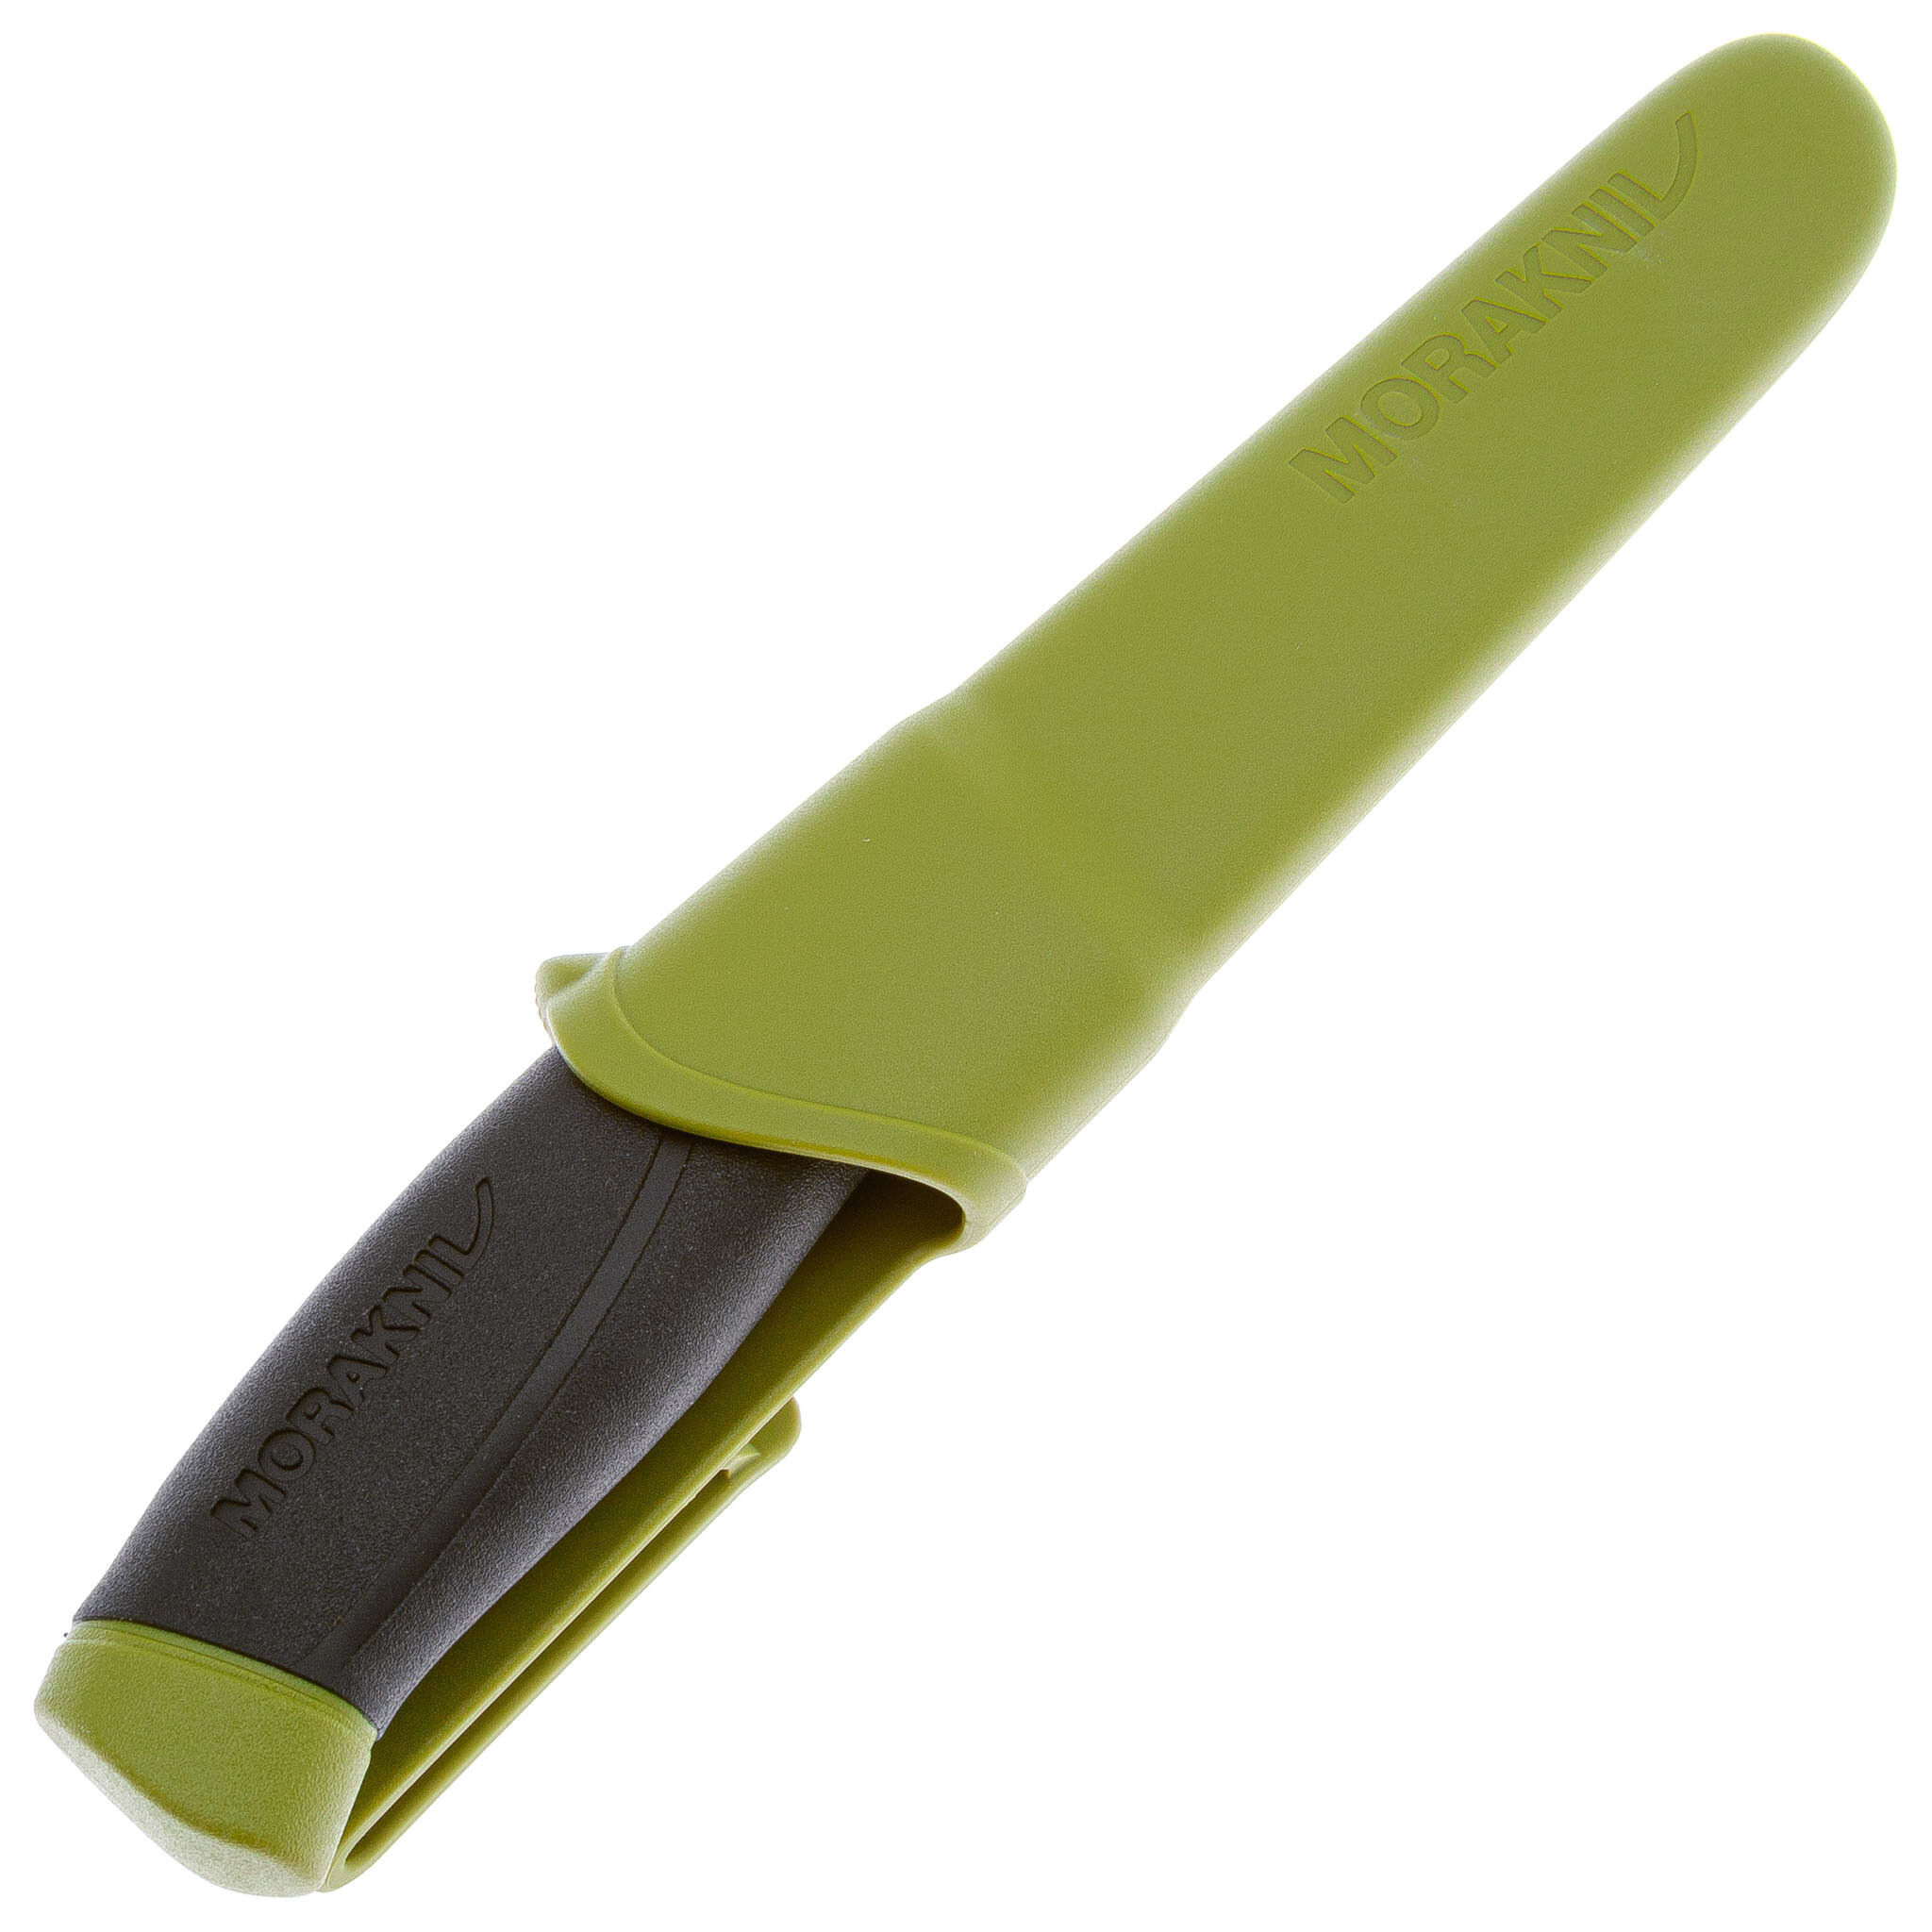 Нож с фиксированным лезвием Morakniv Companion, сталь Sandvik 12C27, рукоять резина, olive green - фото 4